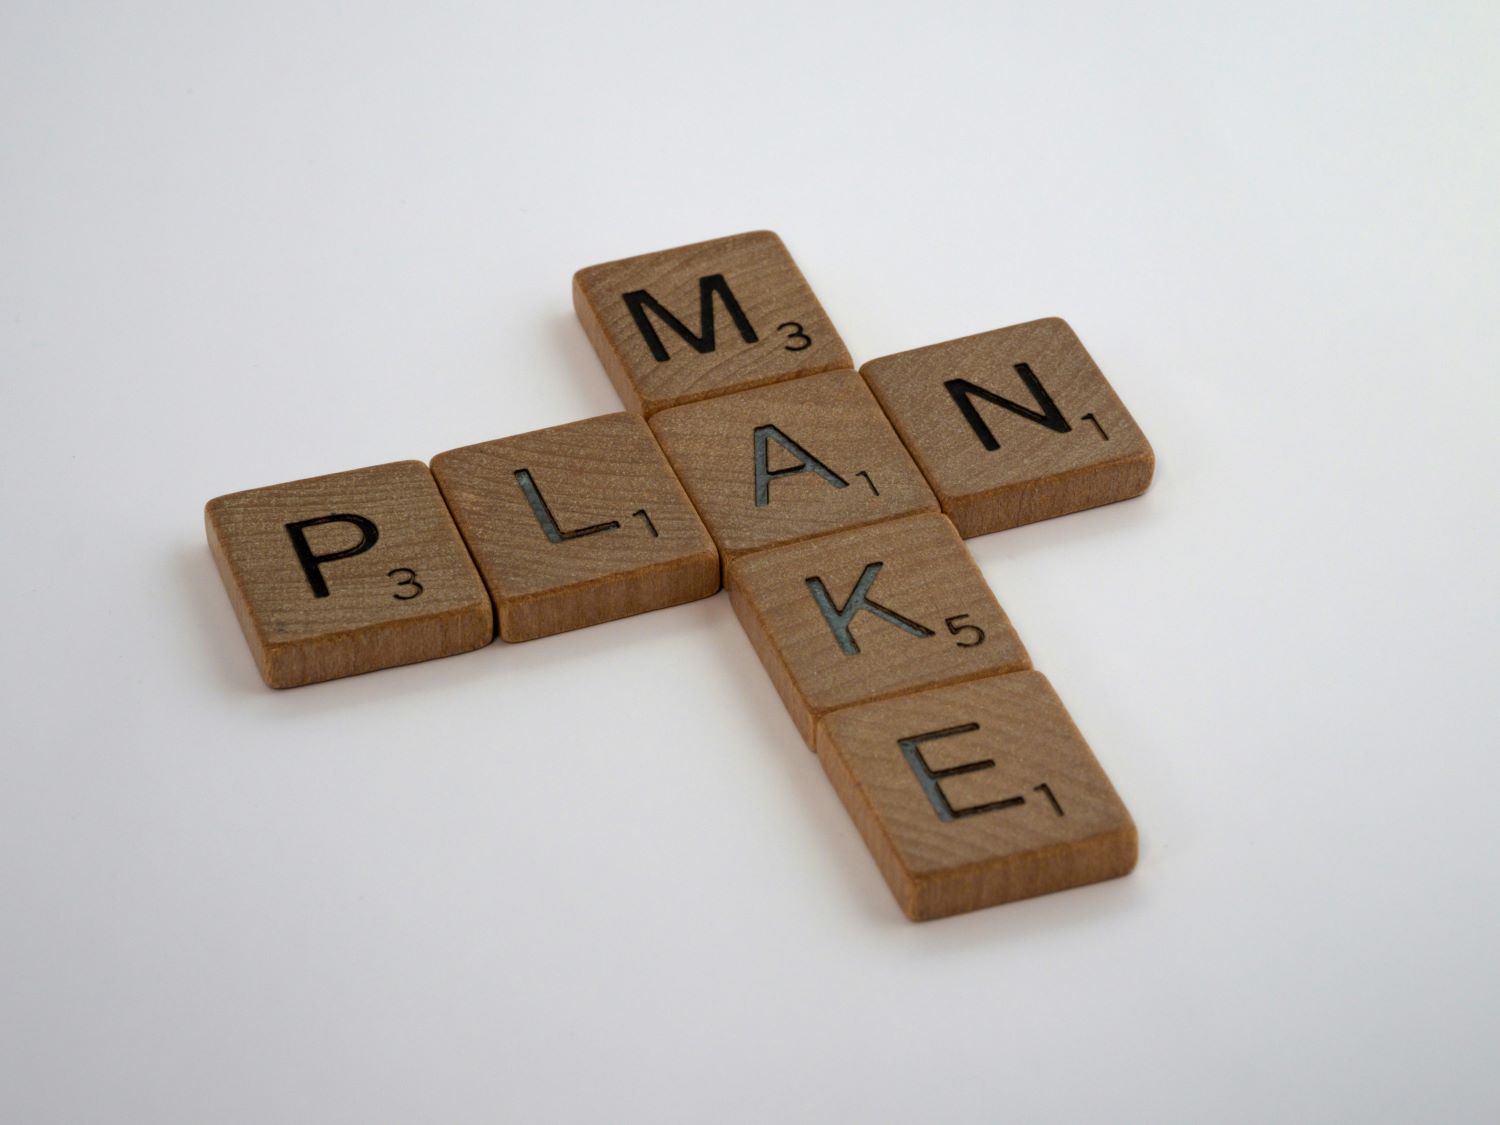 Gezeigt sind Scrabble Steine, mit denen die Worte "Make" und "Plan" geschrieben wurden.